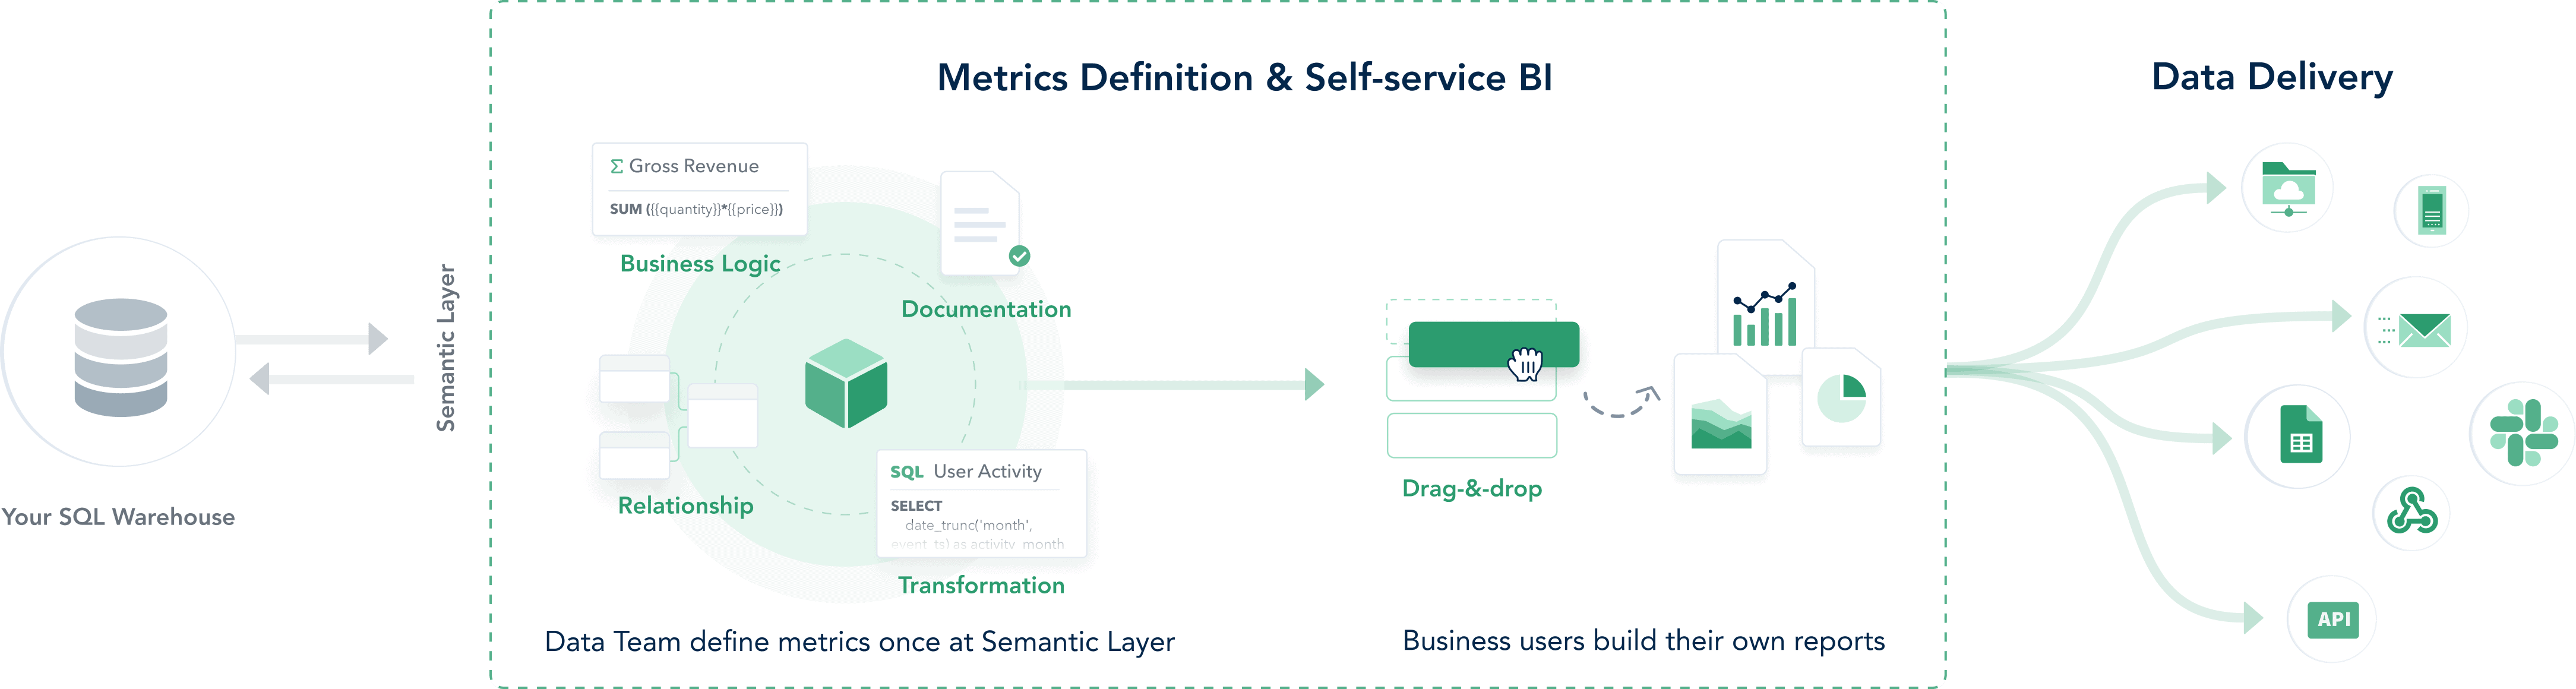 Holistics Self-service BI Platform